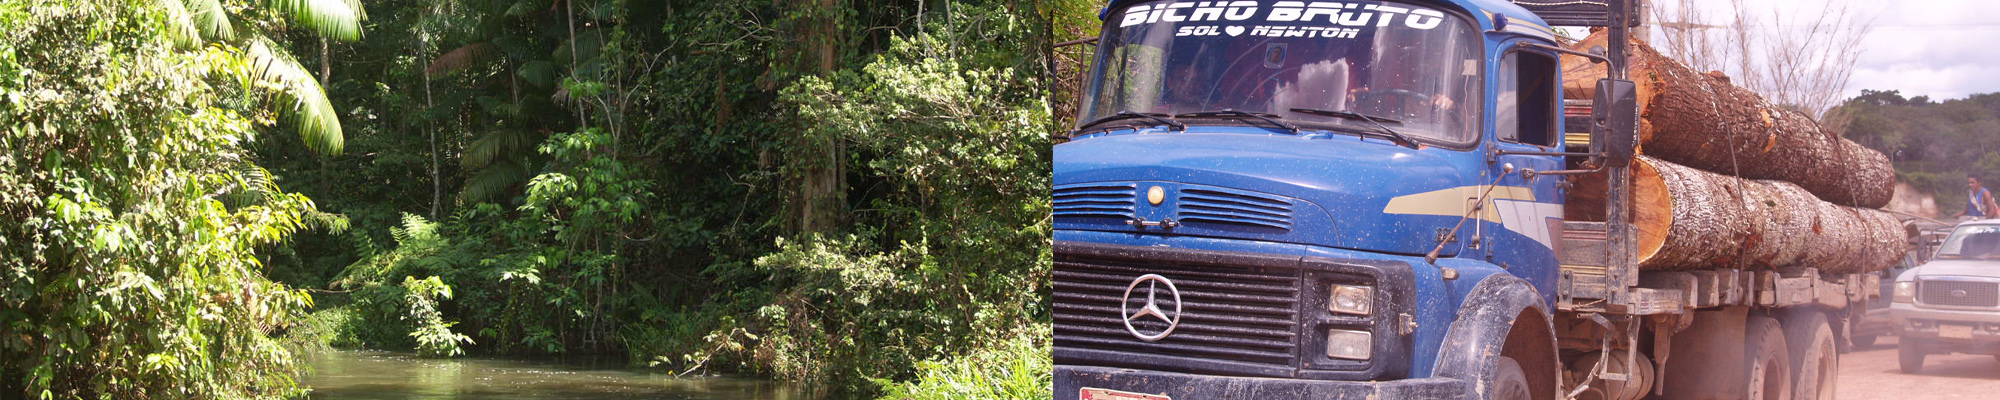 left: Brazilian rainforest, right: logging truck